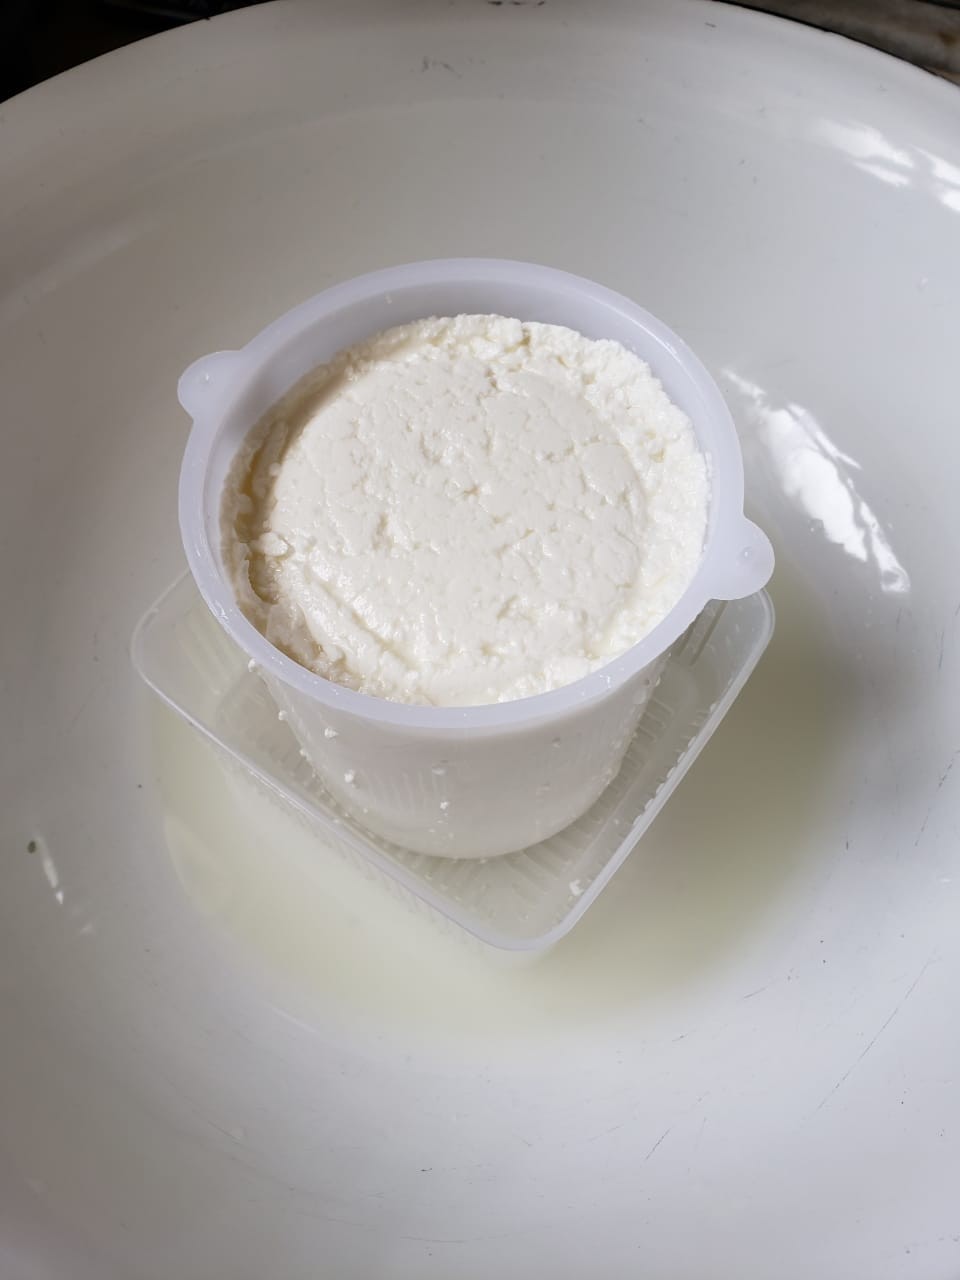 Fôrma própria para queijo (Foto: Arquivo pessoal)